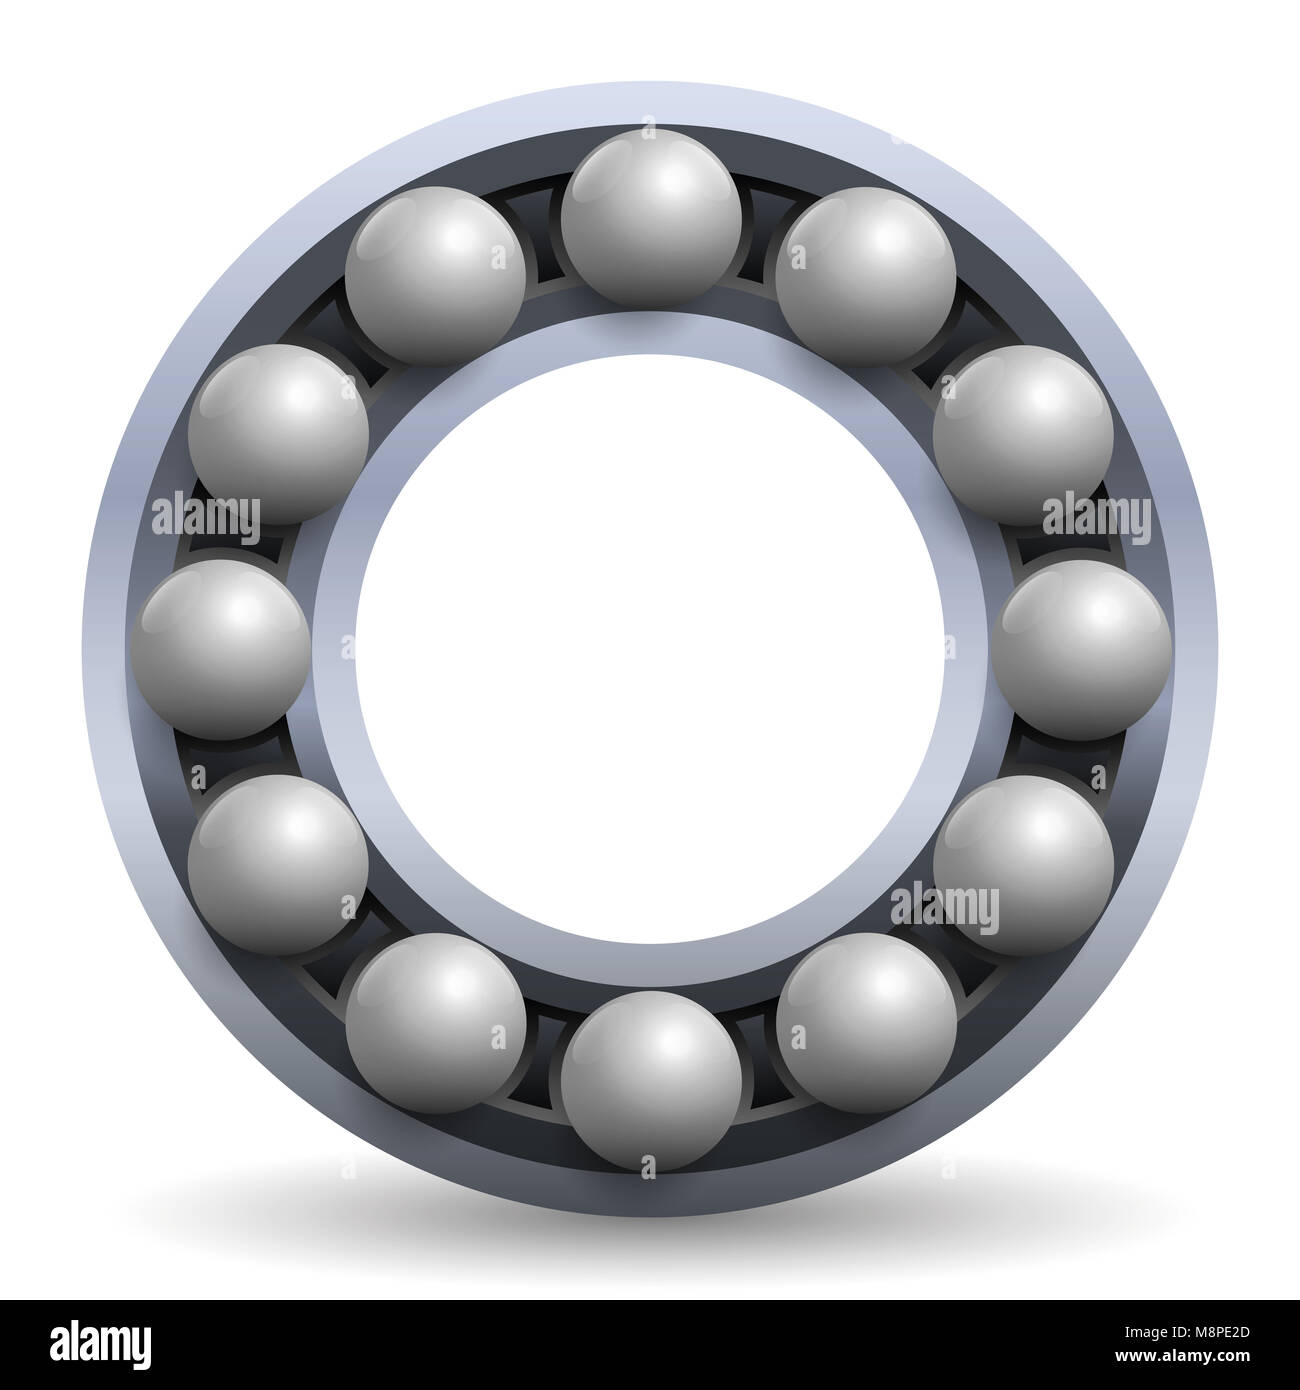 Wälzlager. Stahlkugeln in einem Metall Rad. Schematisches Modell Abbildung: Eine mechanische, technische Artikel. Stockfoto